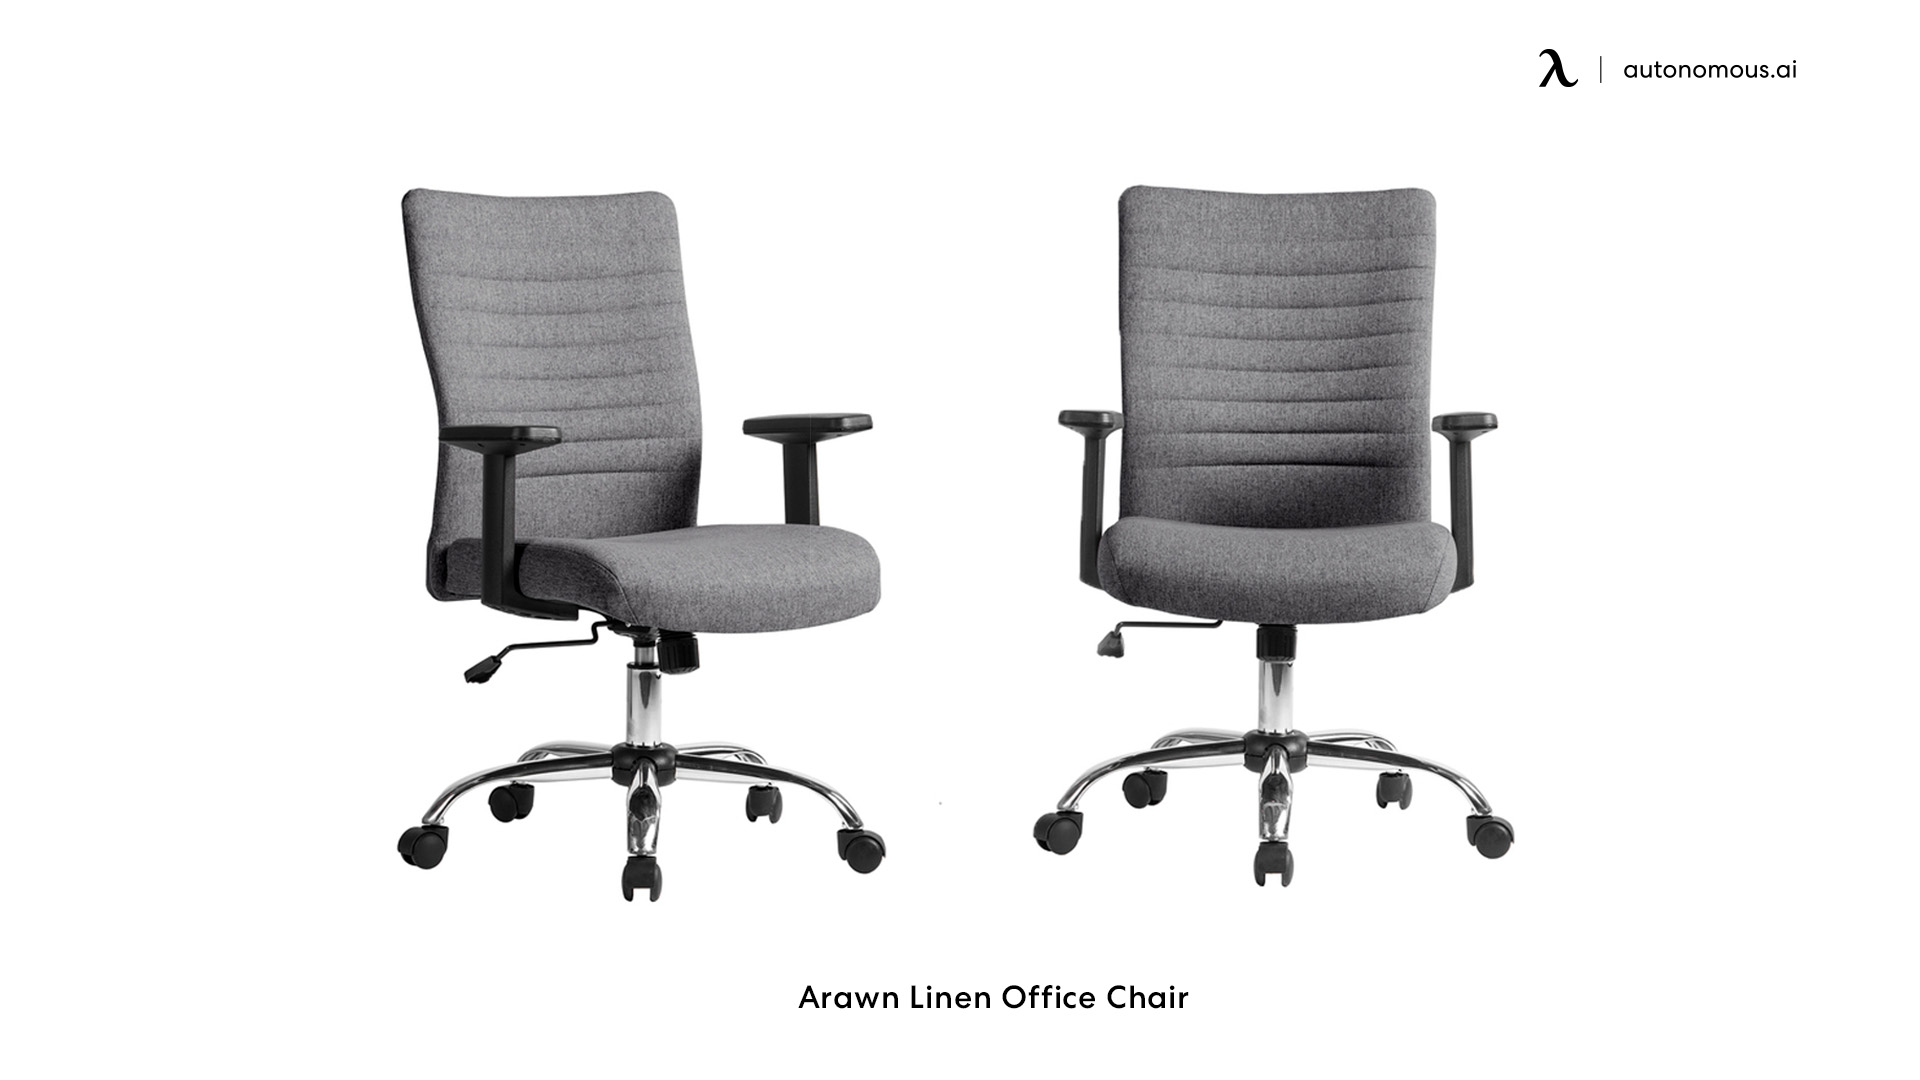 Arawn Linen Office Chair